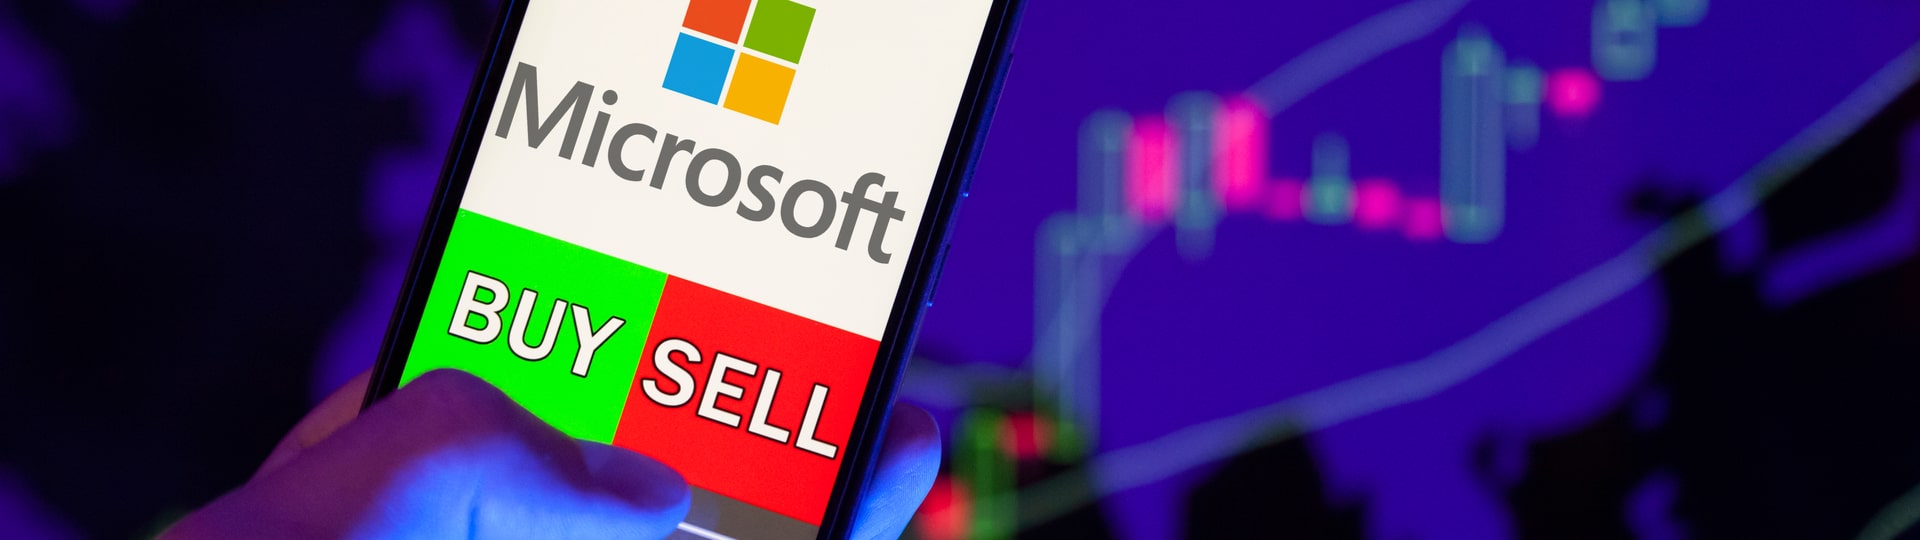 Šéf Microsoftu prodal téměř polovinu svých firemních akcií